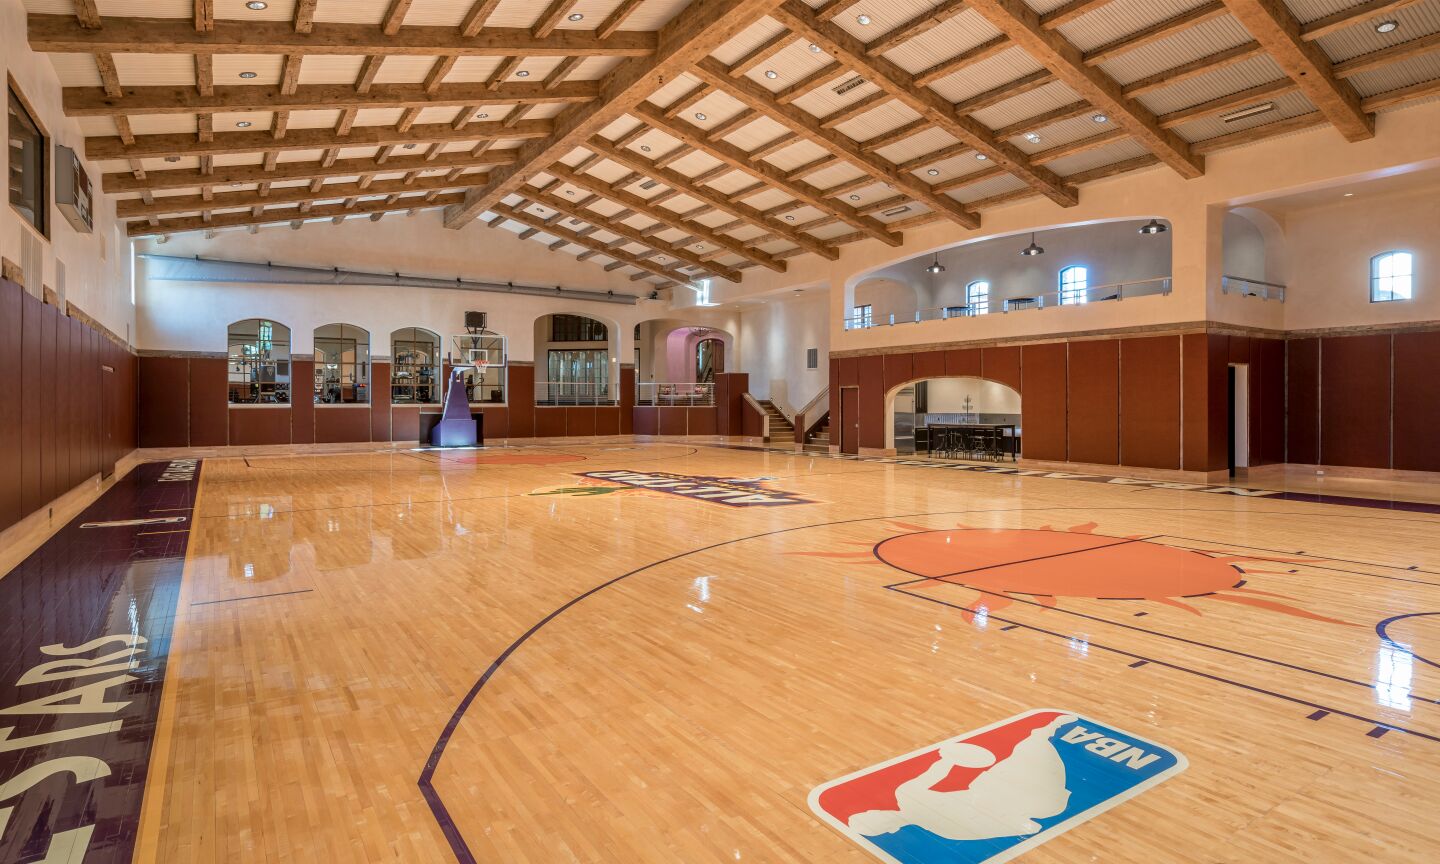 An indoor Phoenix Suns-themed basketball court.